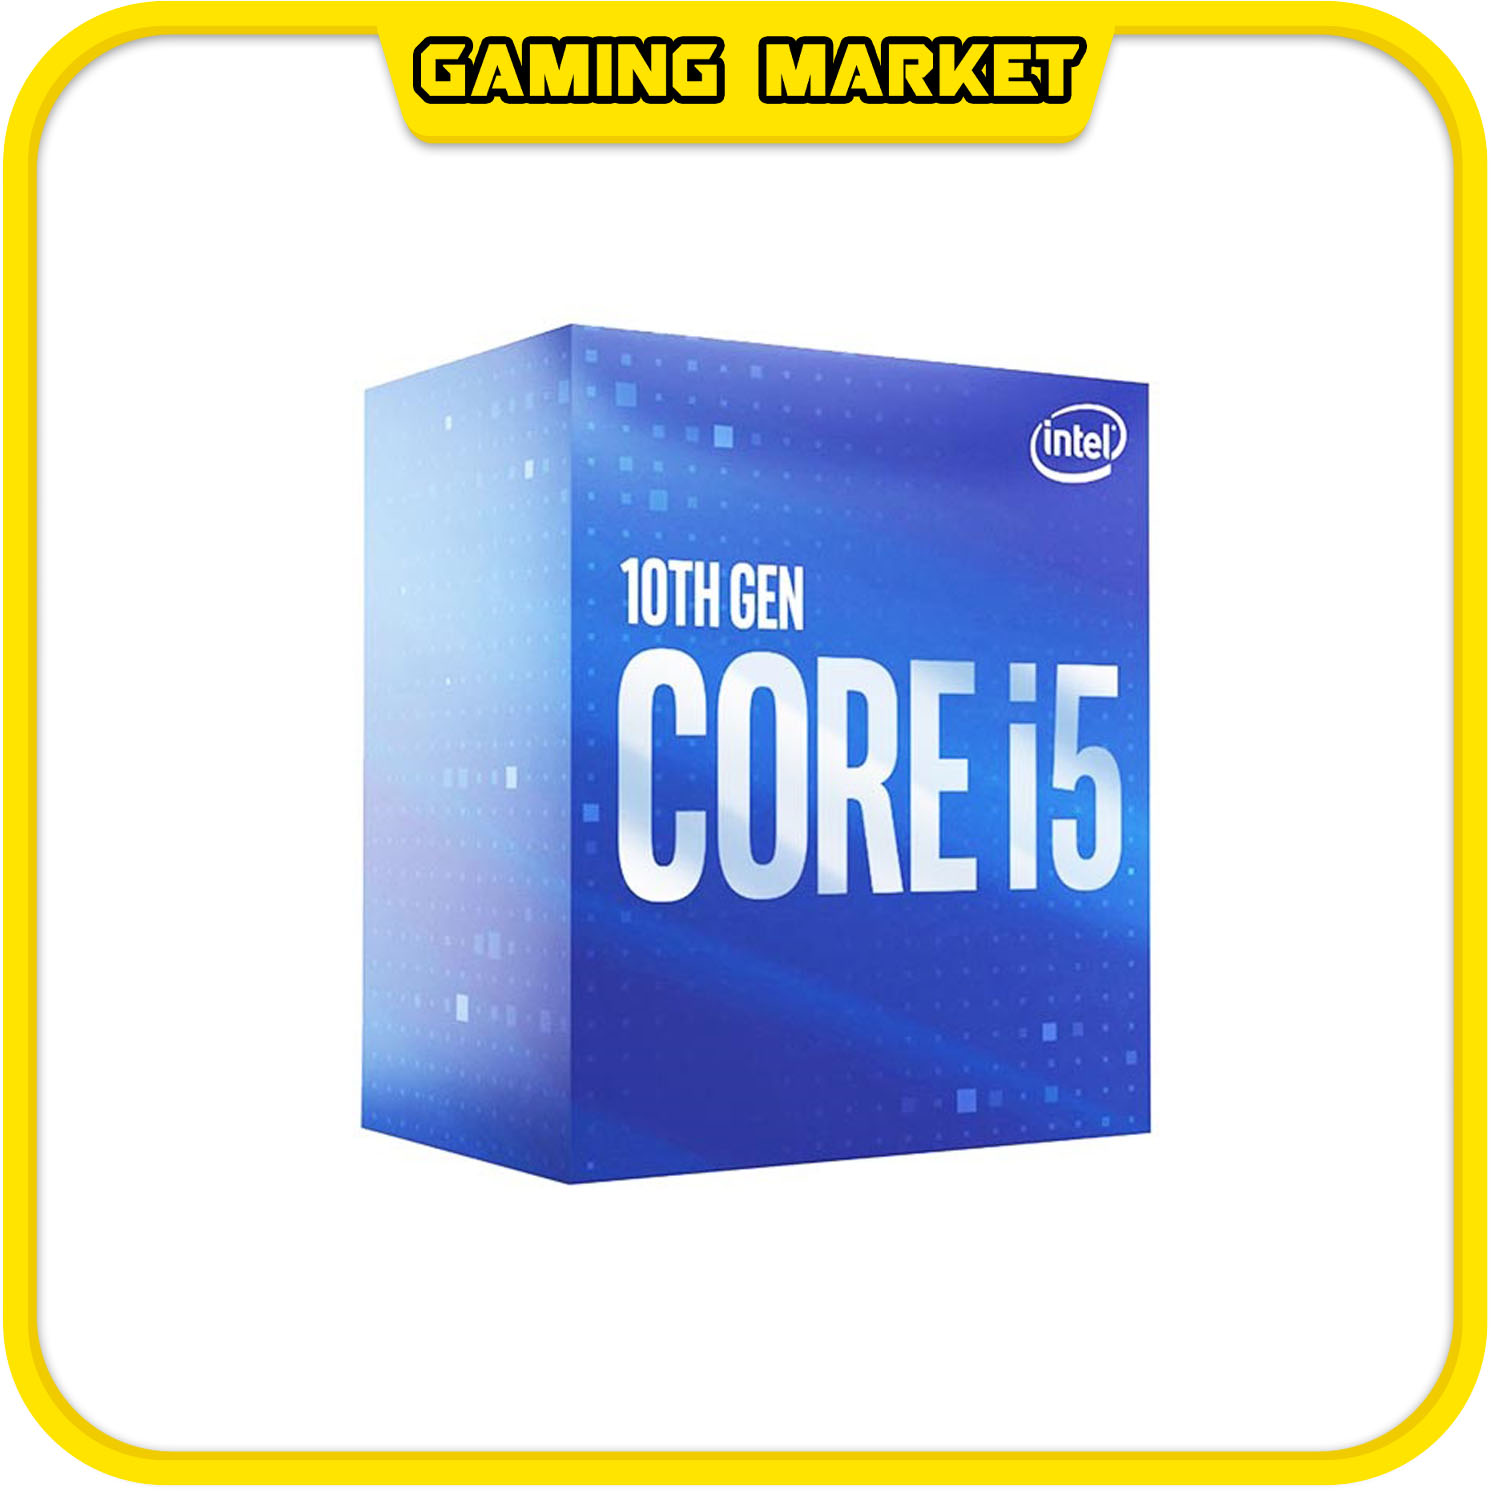 PC CHƠI GAME, ĐỒ HOẠ I5 10400F/RAM 16G/VGA 1650 4G